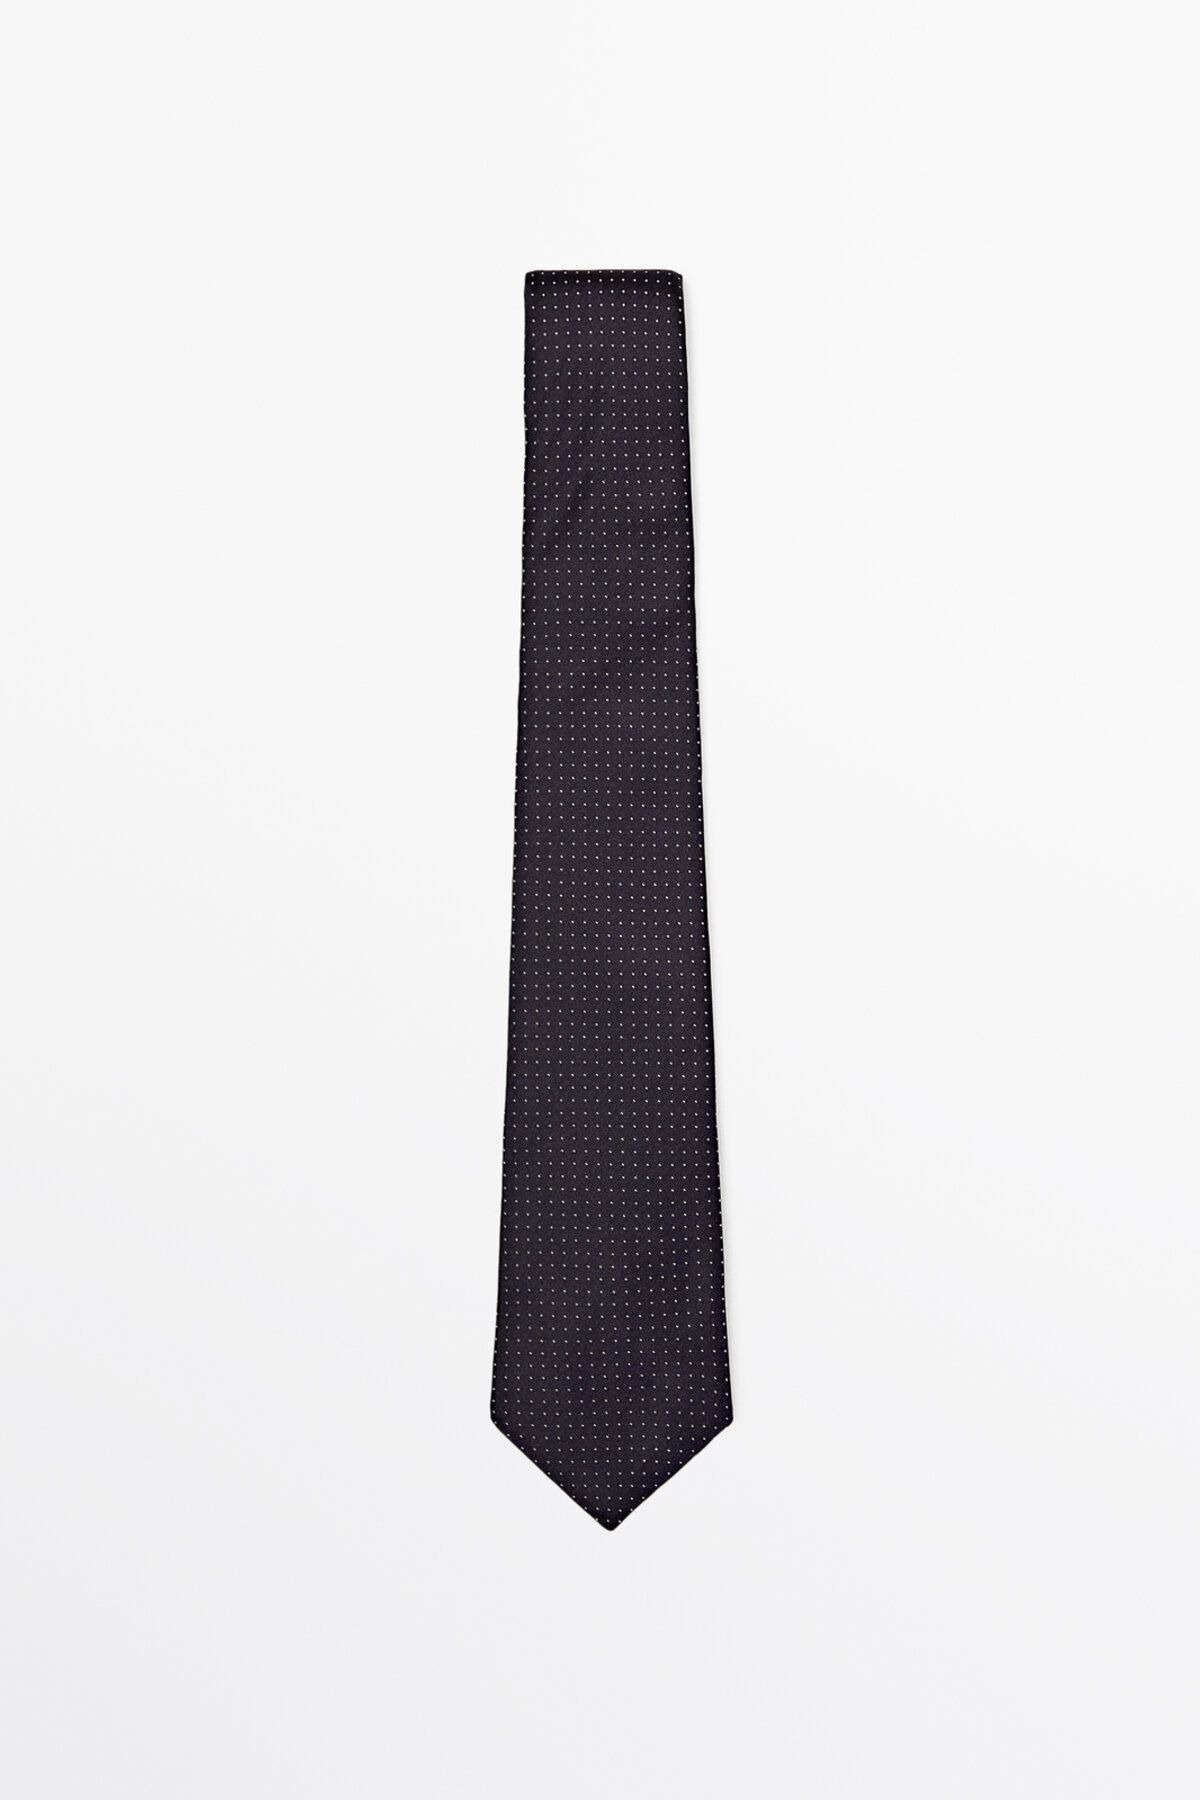 Massimo Dutti 100 ipek puantiye desenli kravat